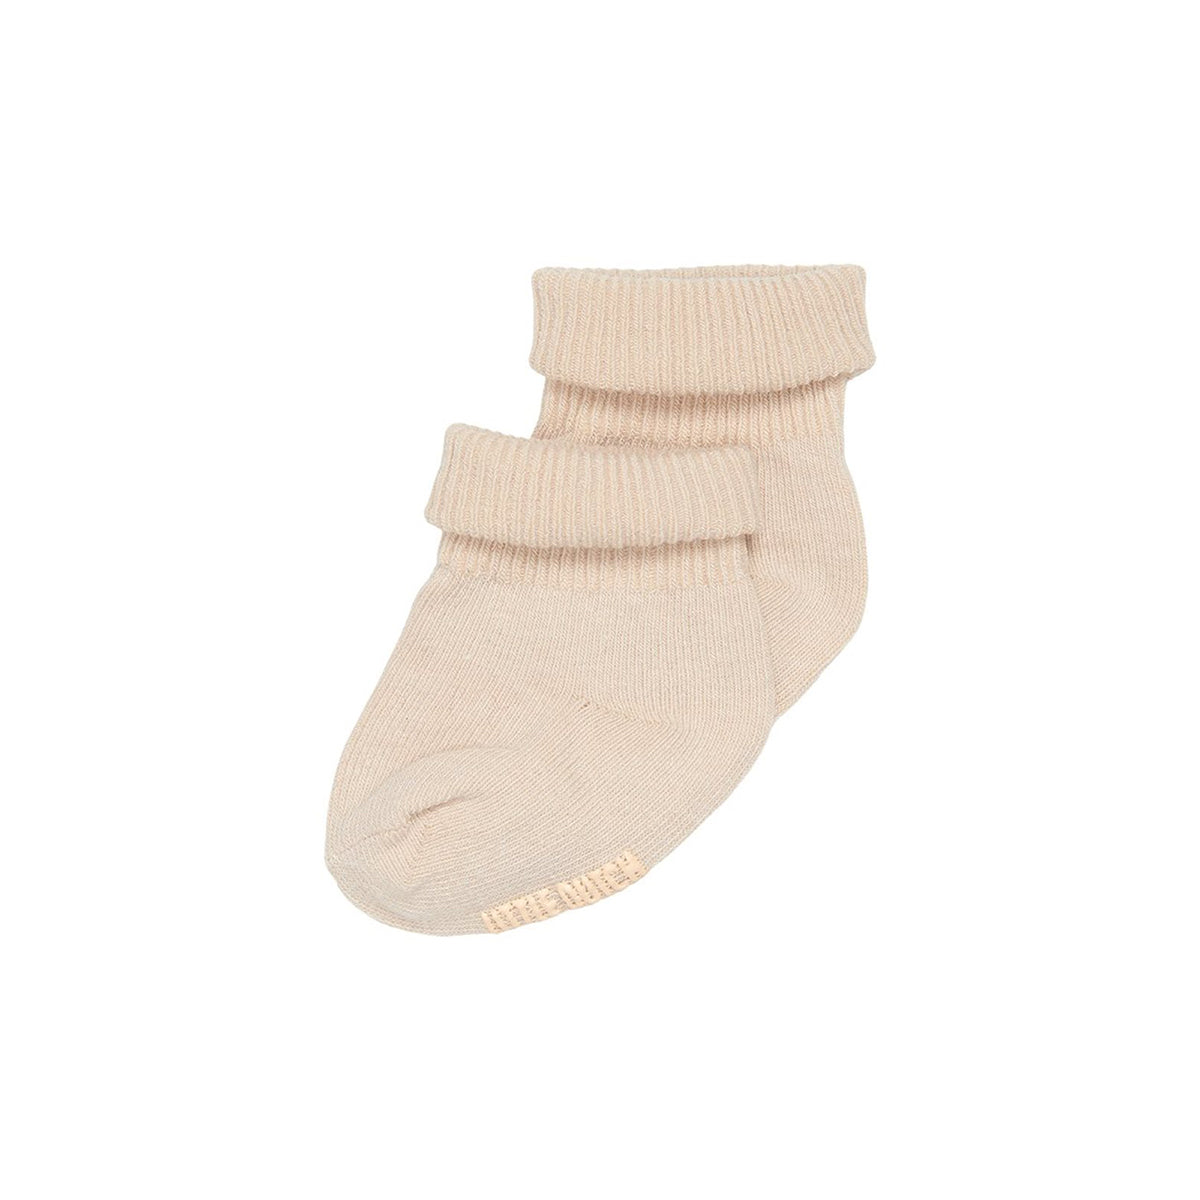 Maak de outfit van jouw kindje compleet met de matchende sokjes sand van Little Dutch. De schattige en hippe babysokjes van biologisch katoen houden de minivoetjes warm en comfortabel. VanZus